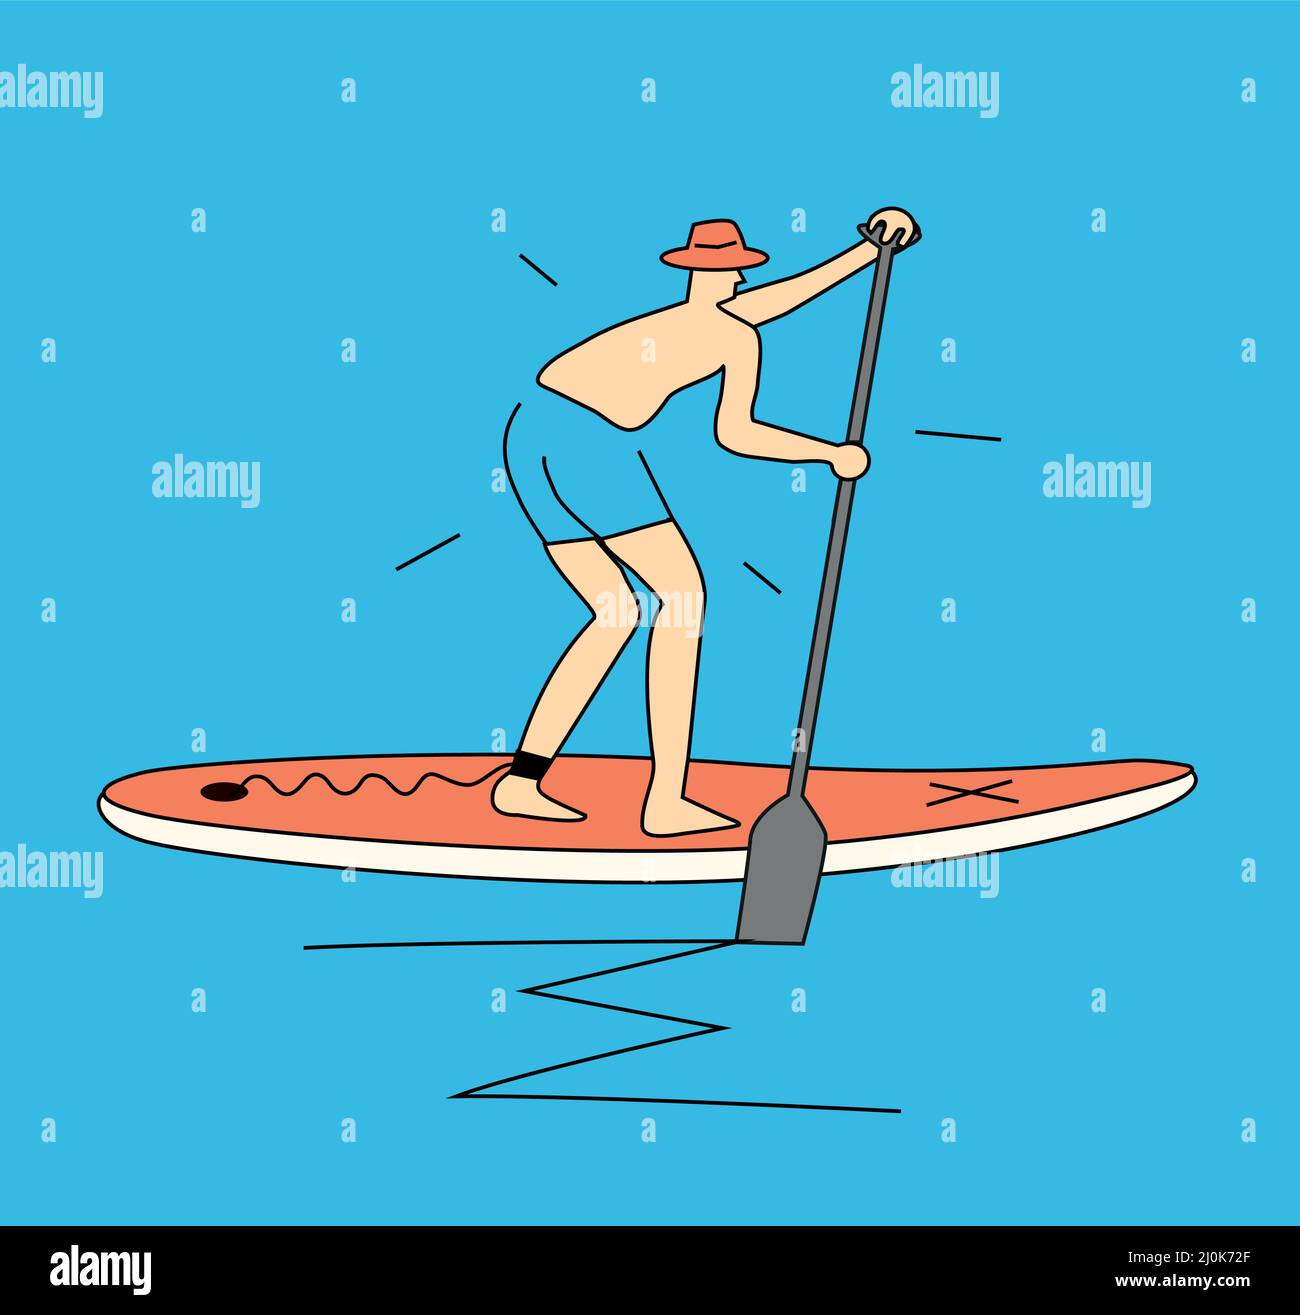 Lustige Anfänger auf Paddleboard, Cartoon. Stilisierte einfache Illustration eines lustig verängstigten Mannes mit Hut, der auf einem Paddleboard reitet. T-Shirt-Design. Vector ava Stock Vektor